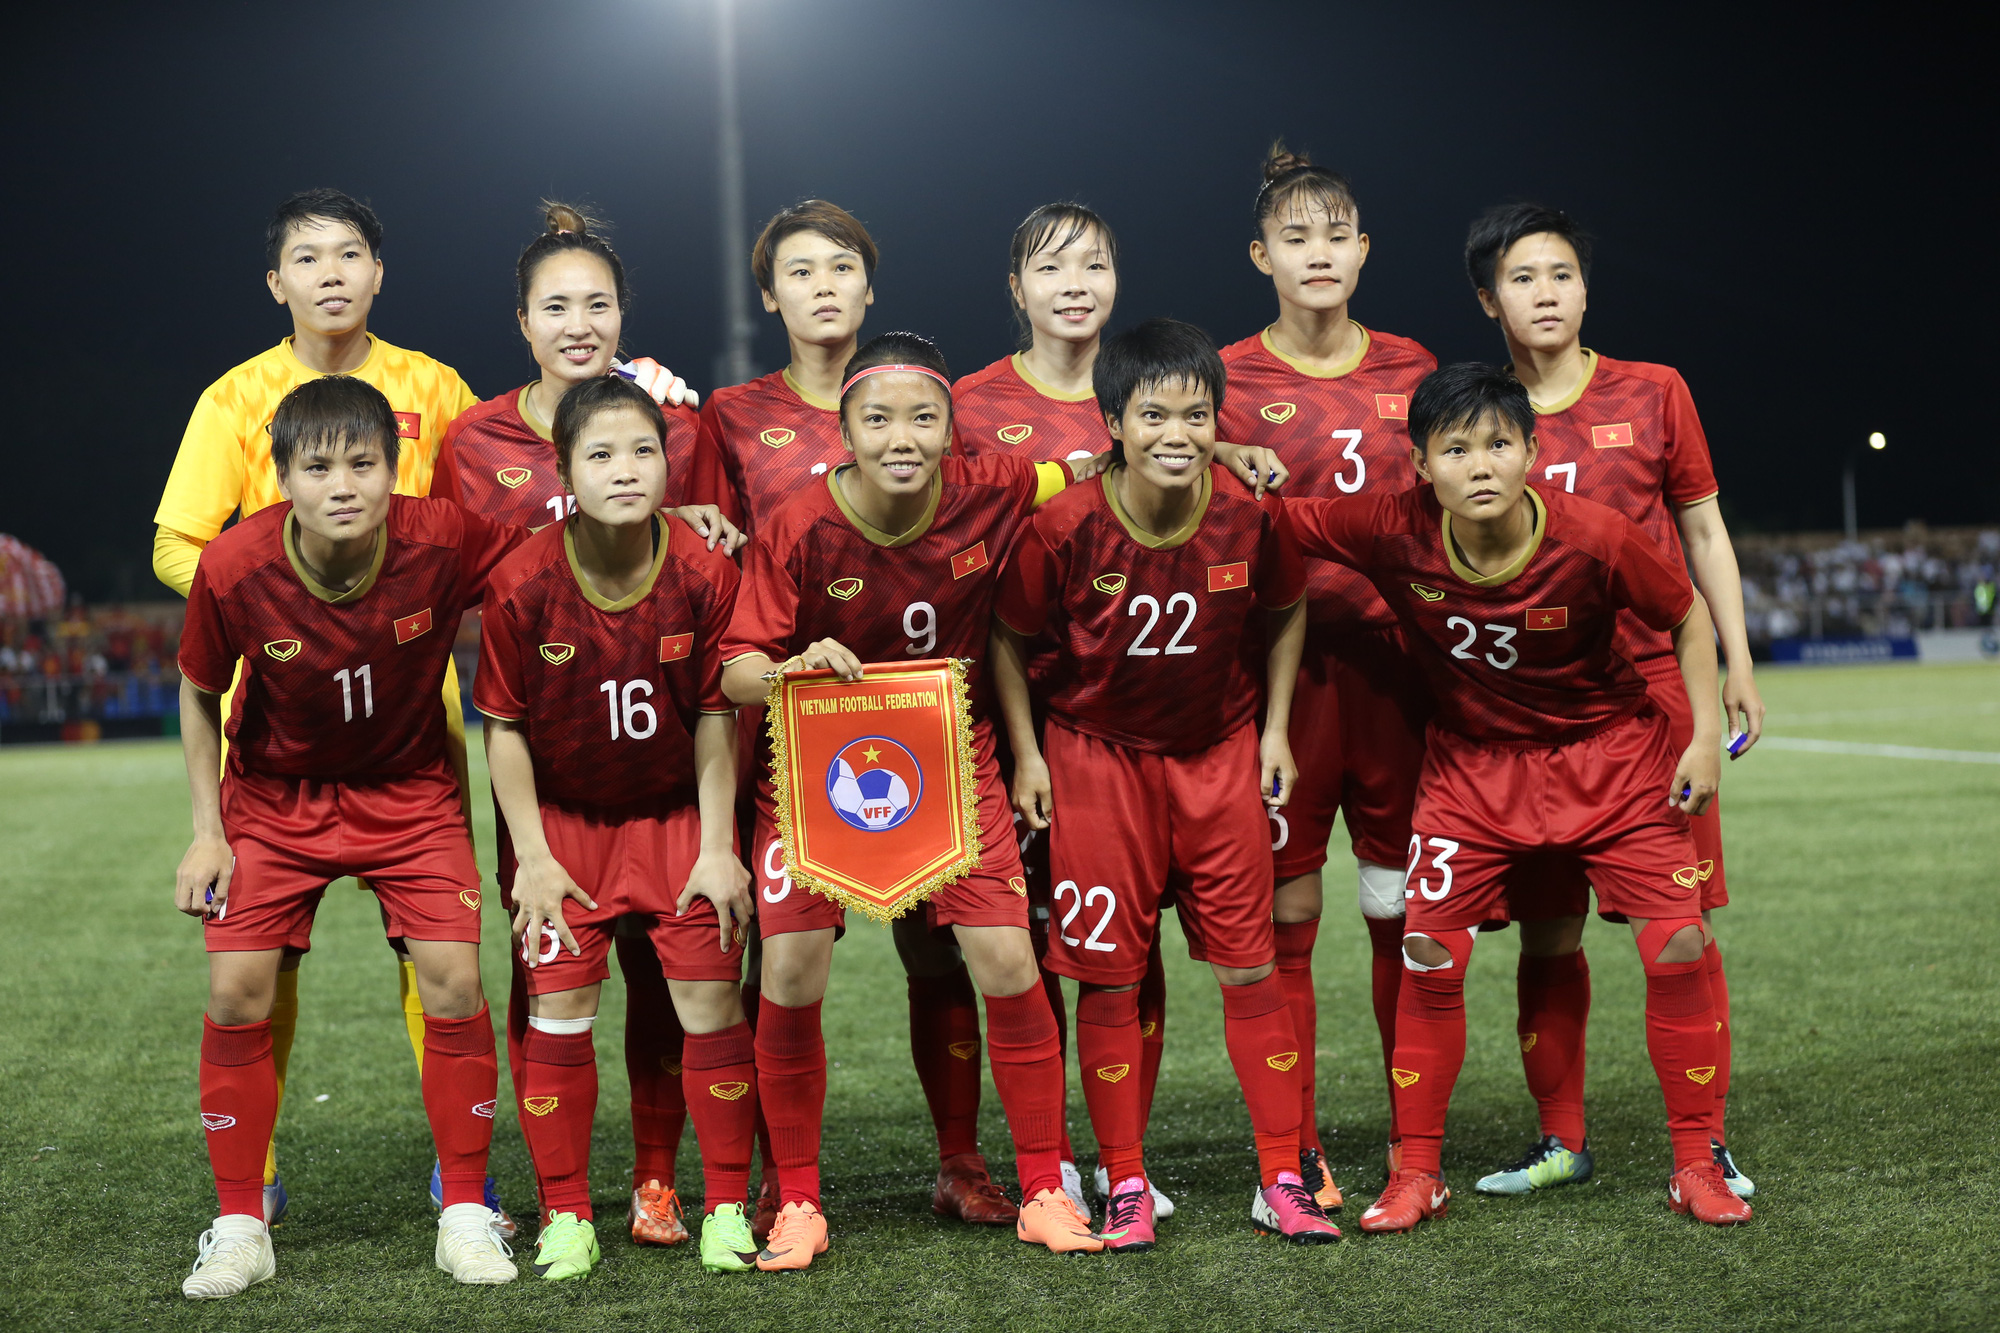 Bóng đá nữ Việt Nam đang nắm trong tay cơ hội tiến tới World Cup